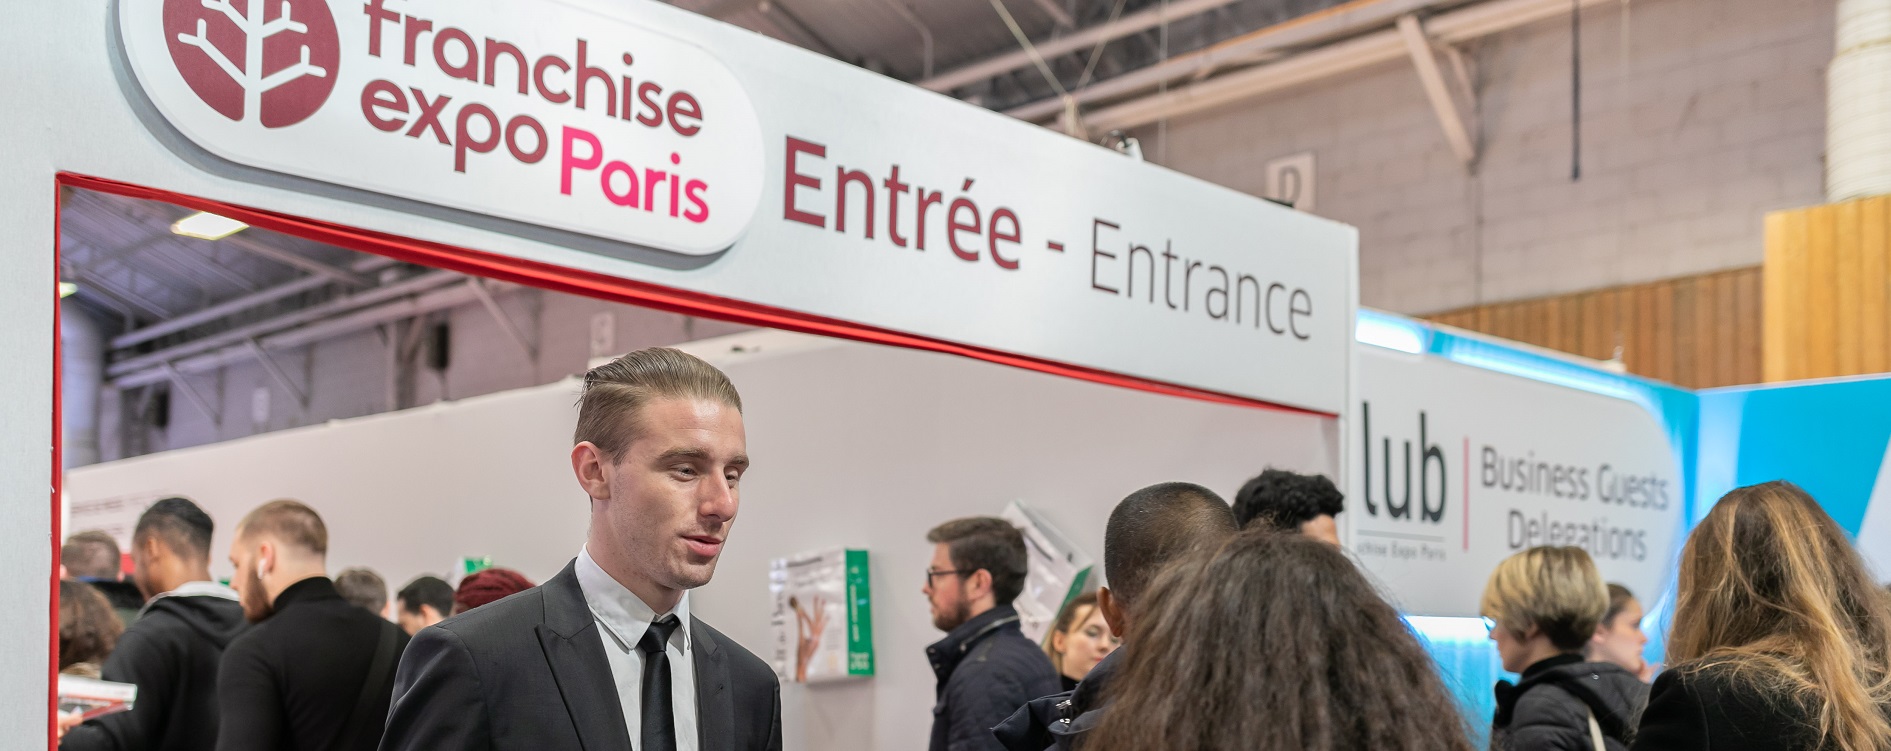 Venez rencontrer votre futur franchiseur ViaSphère à Franchise Expo Paris !